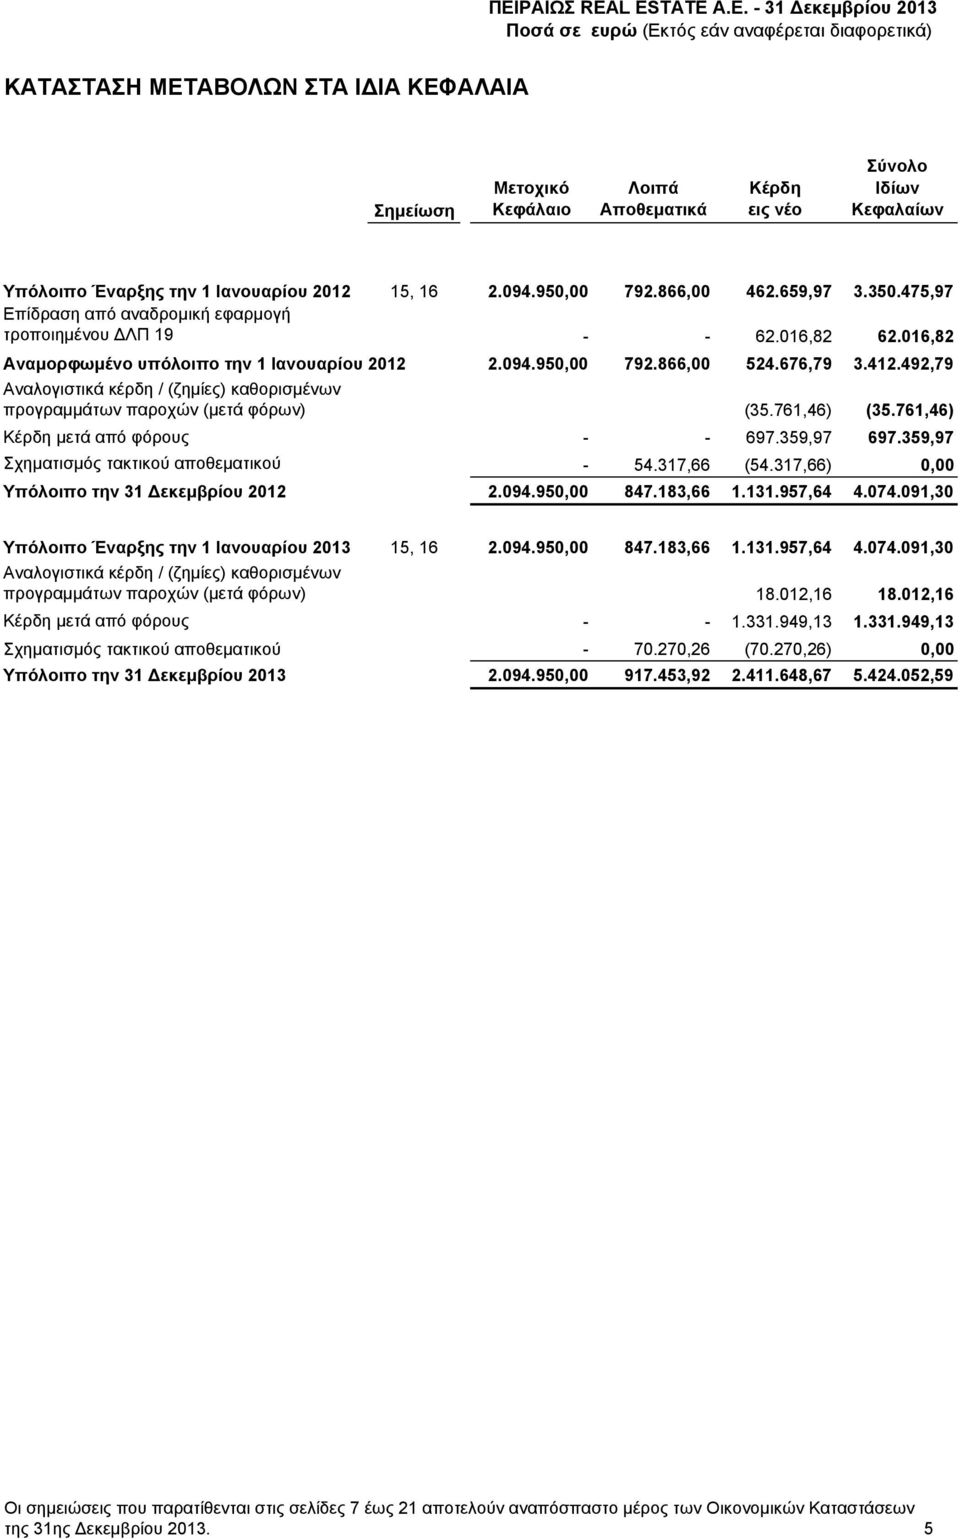 492,79 Αναλογιστικά κέρδη / (ζημίες) καθορισμένων προγραμμάτων παροχών (μετά φόρων) Κέρδη μετά από φόρους (35.761,46) (35.761,46) - - 697.359,97 697.359,97 Σχηματισμός τακτικού αποθεματικού - 54.